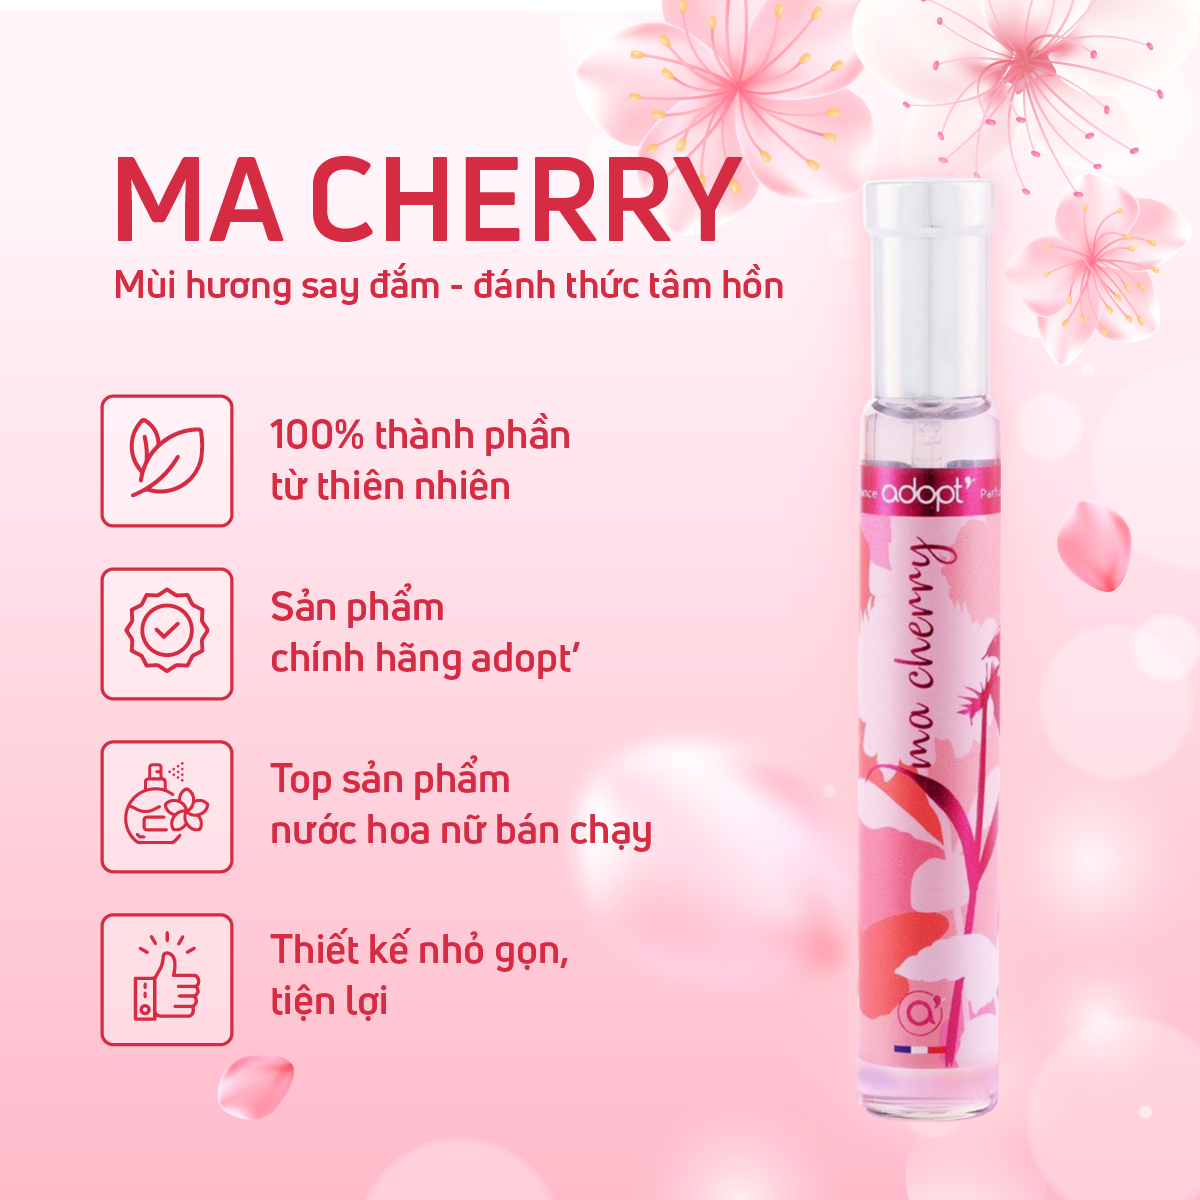 Nước hoa giá rẻ,nước hoa chính hãng cao cấp hương thơm dịu ngọt chính hãng thơm lâu Ma Cherry dung tích 30ml